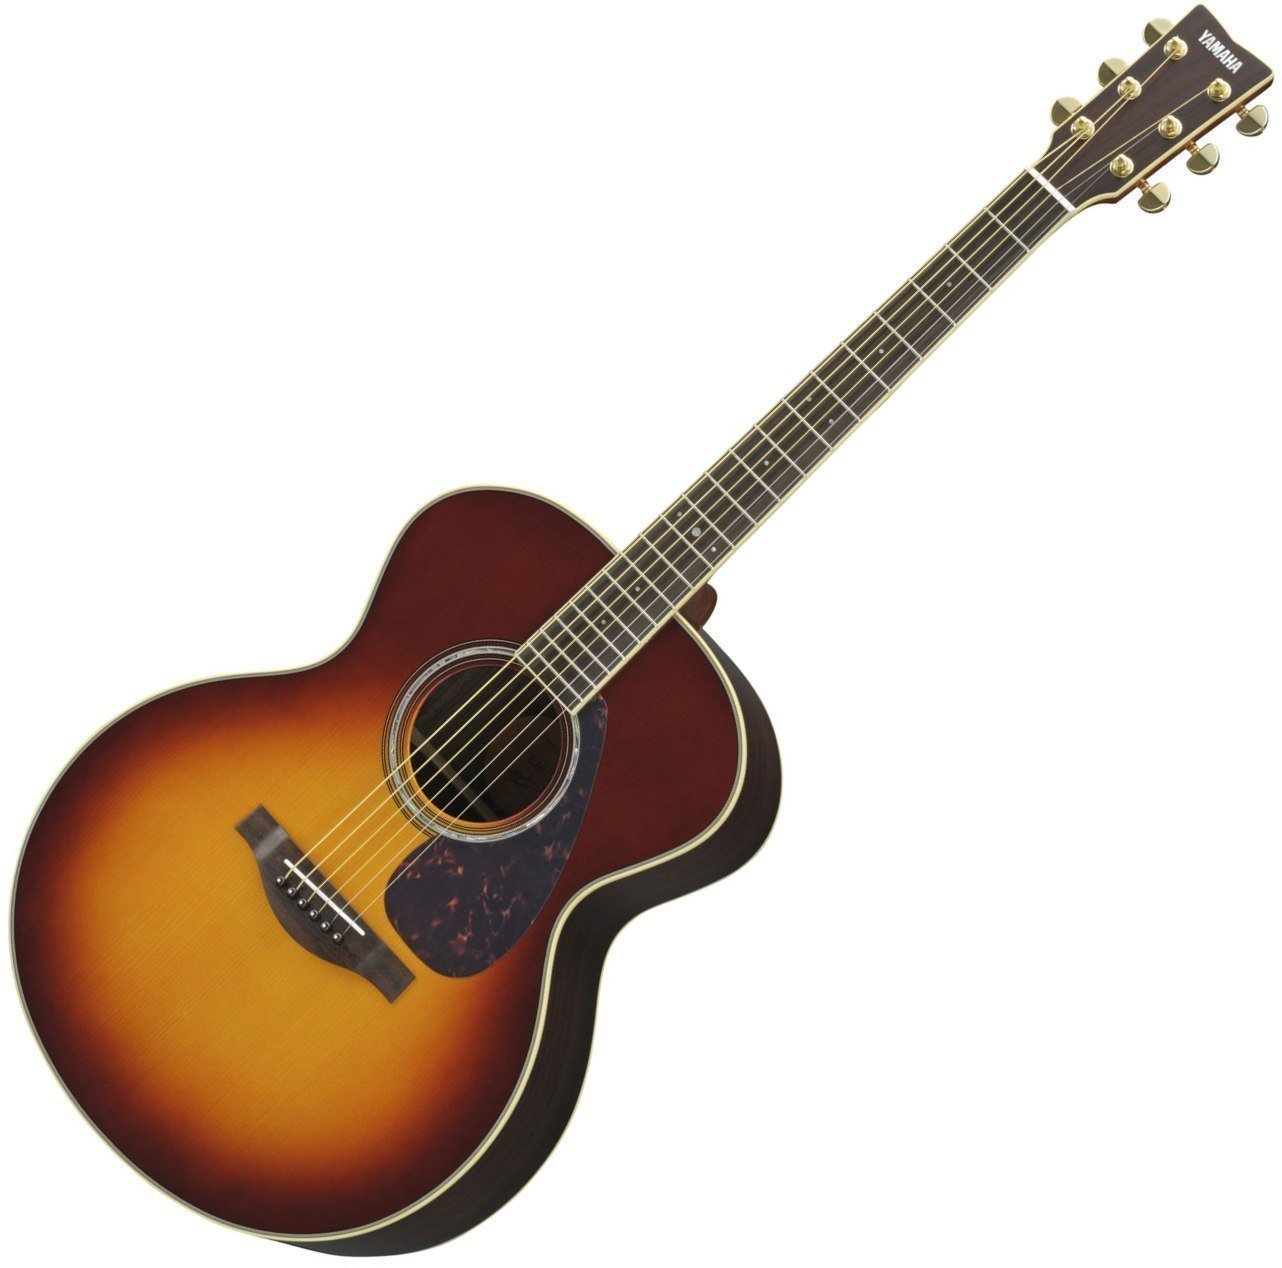 Ηλεκτροακουστική Κιθάρα Jumbo Yamaha LJ 6 A.R.E. BS Brown Sunburst